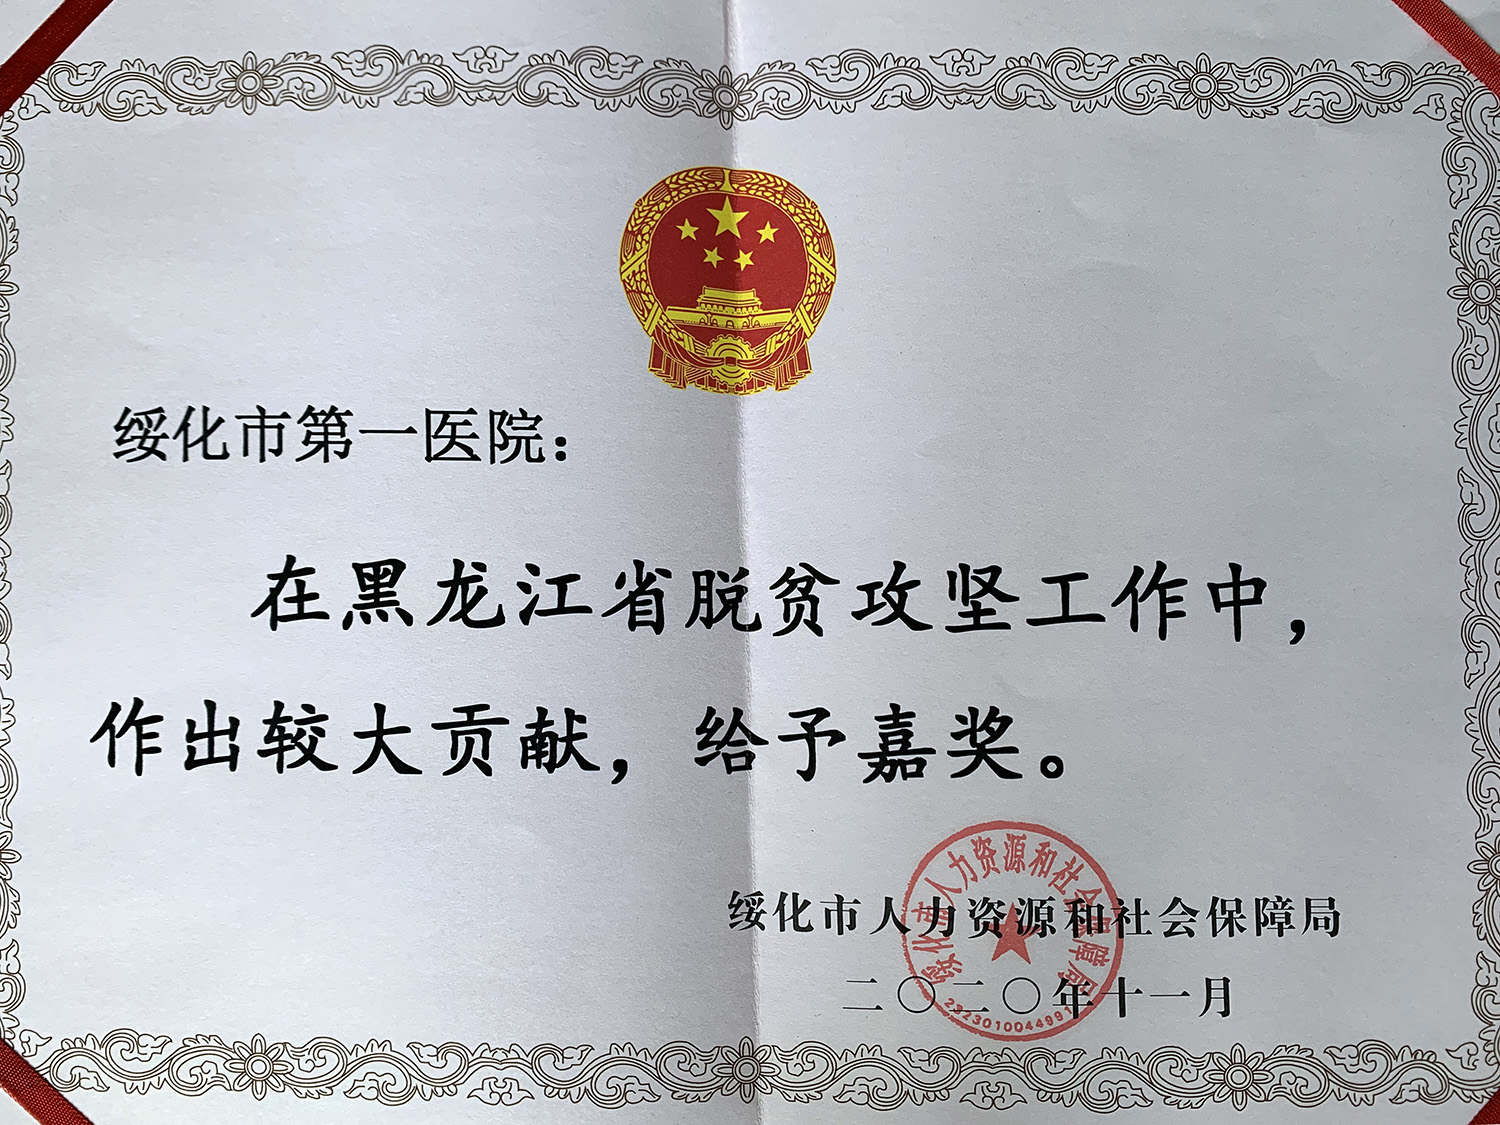 2020年10月绥化市第一医院获得绥化市人力资源和社会保障局颁发的“黑龙江省事业单位脱贫攻坚工作奖励副本